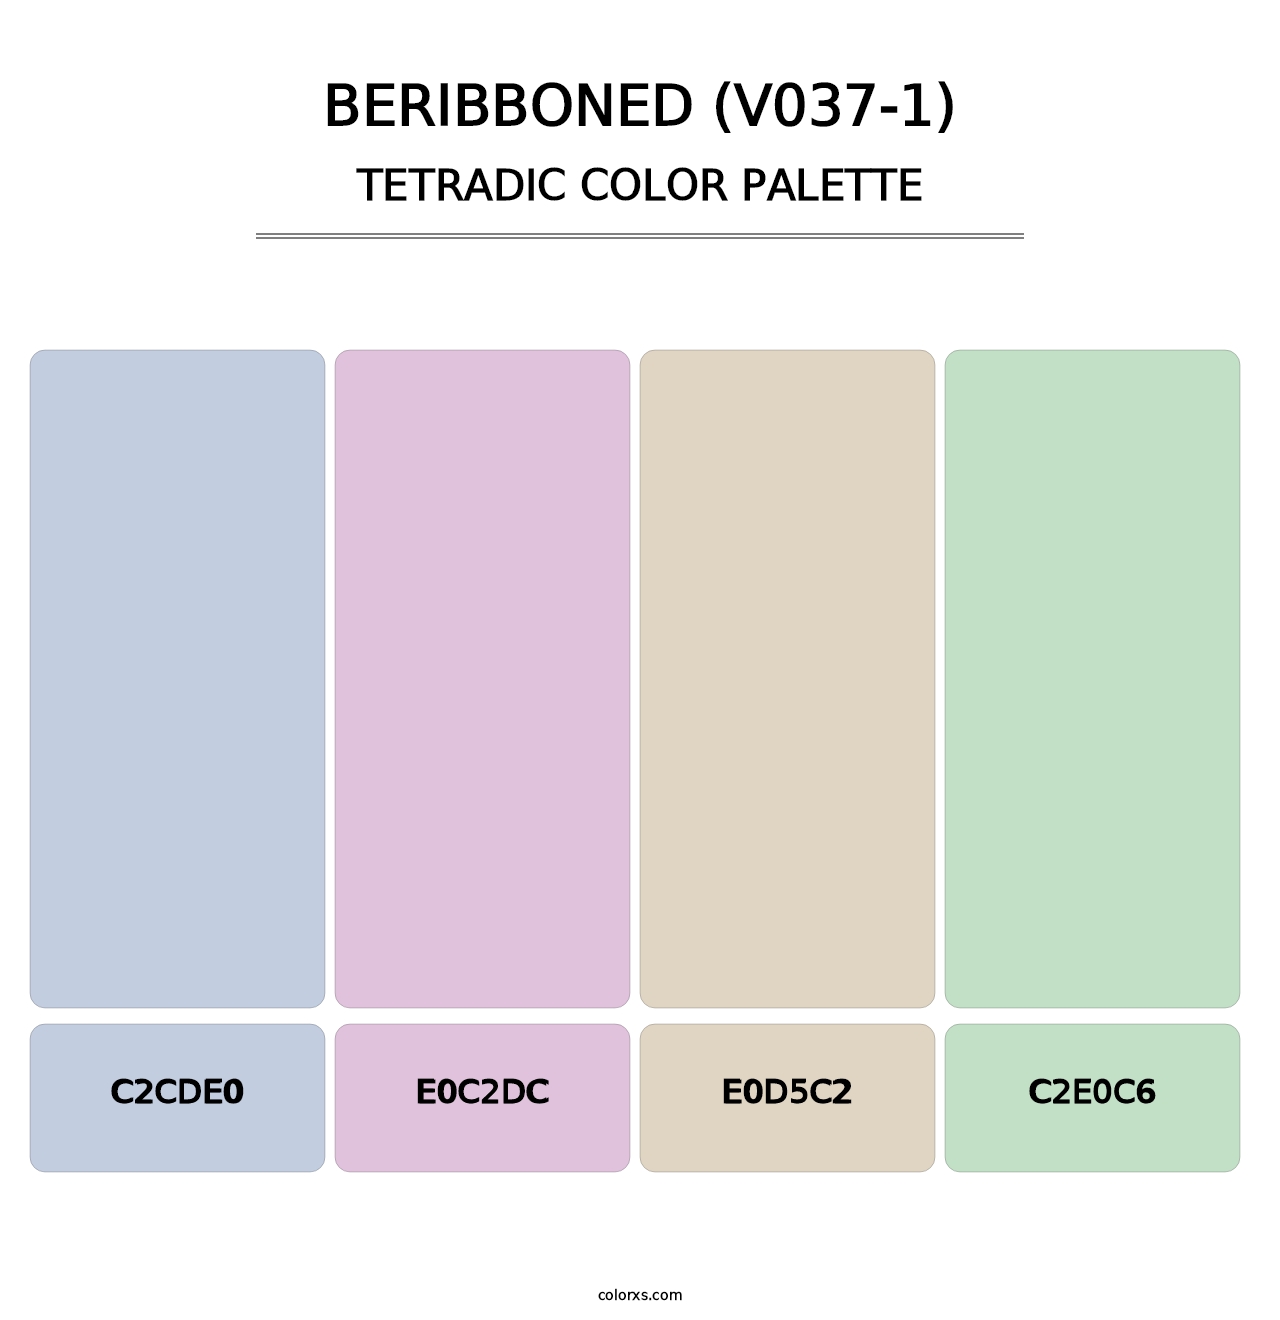 Beribboned (V037-1) - Tetradic Color Palette